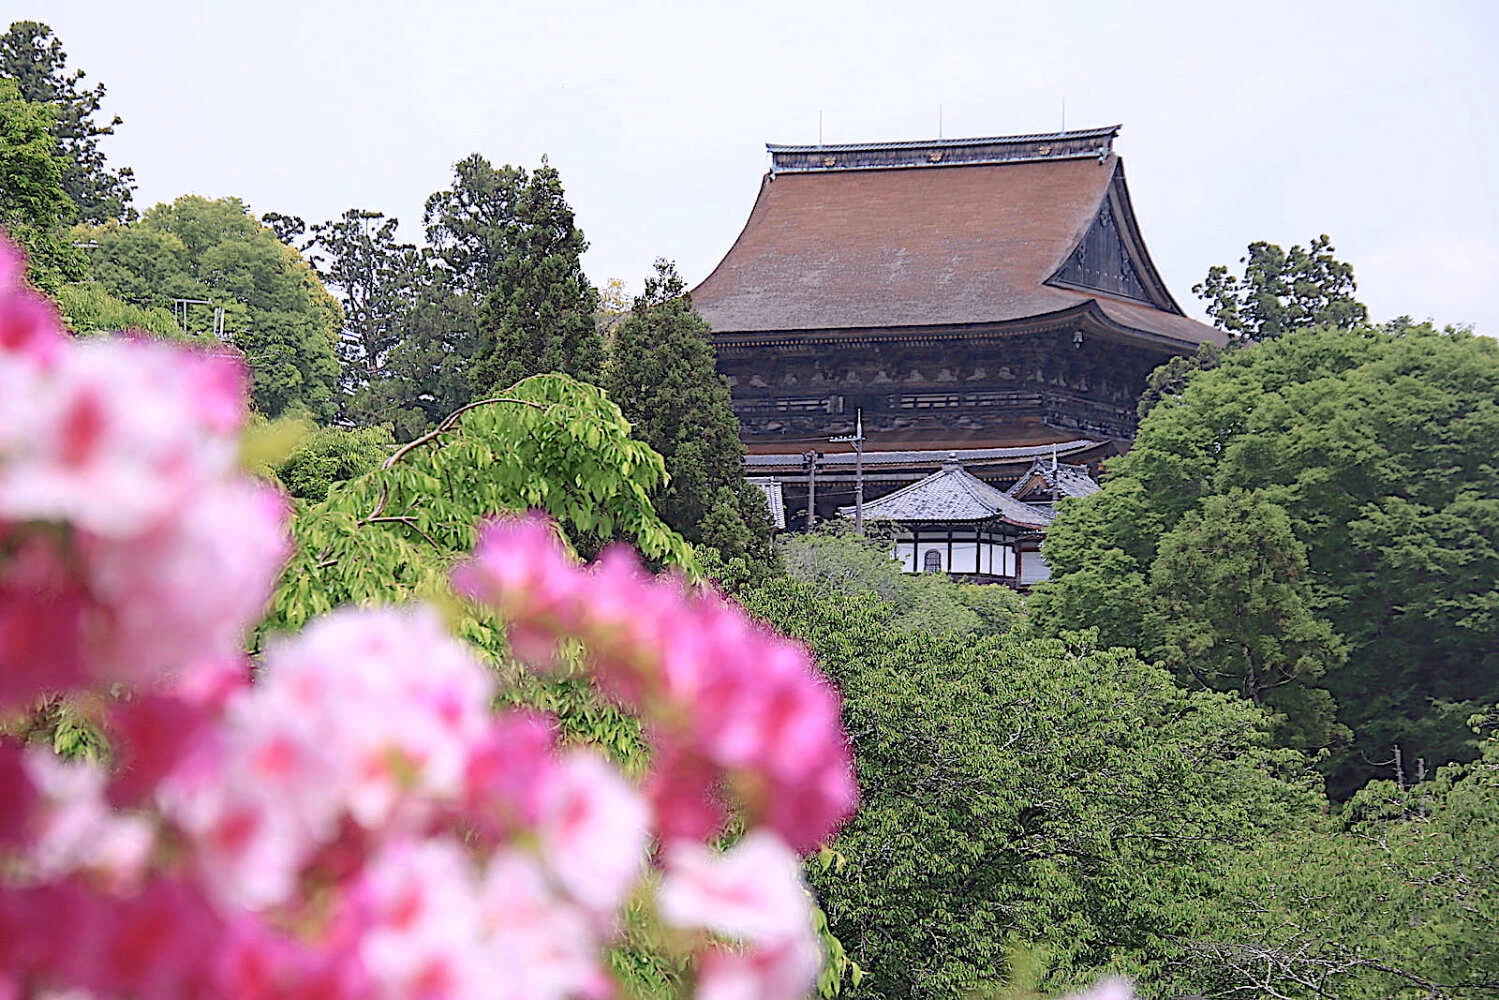 吉水神社へ行く参道から眺める「蔵王堂」